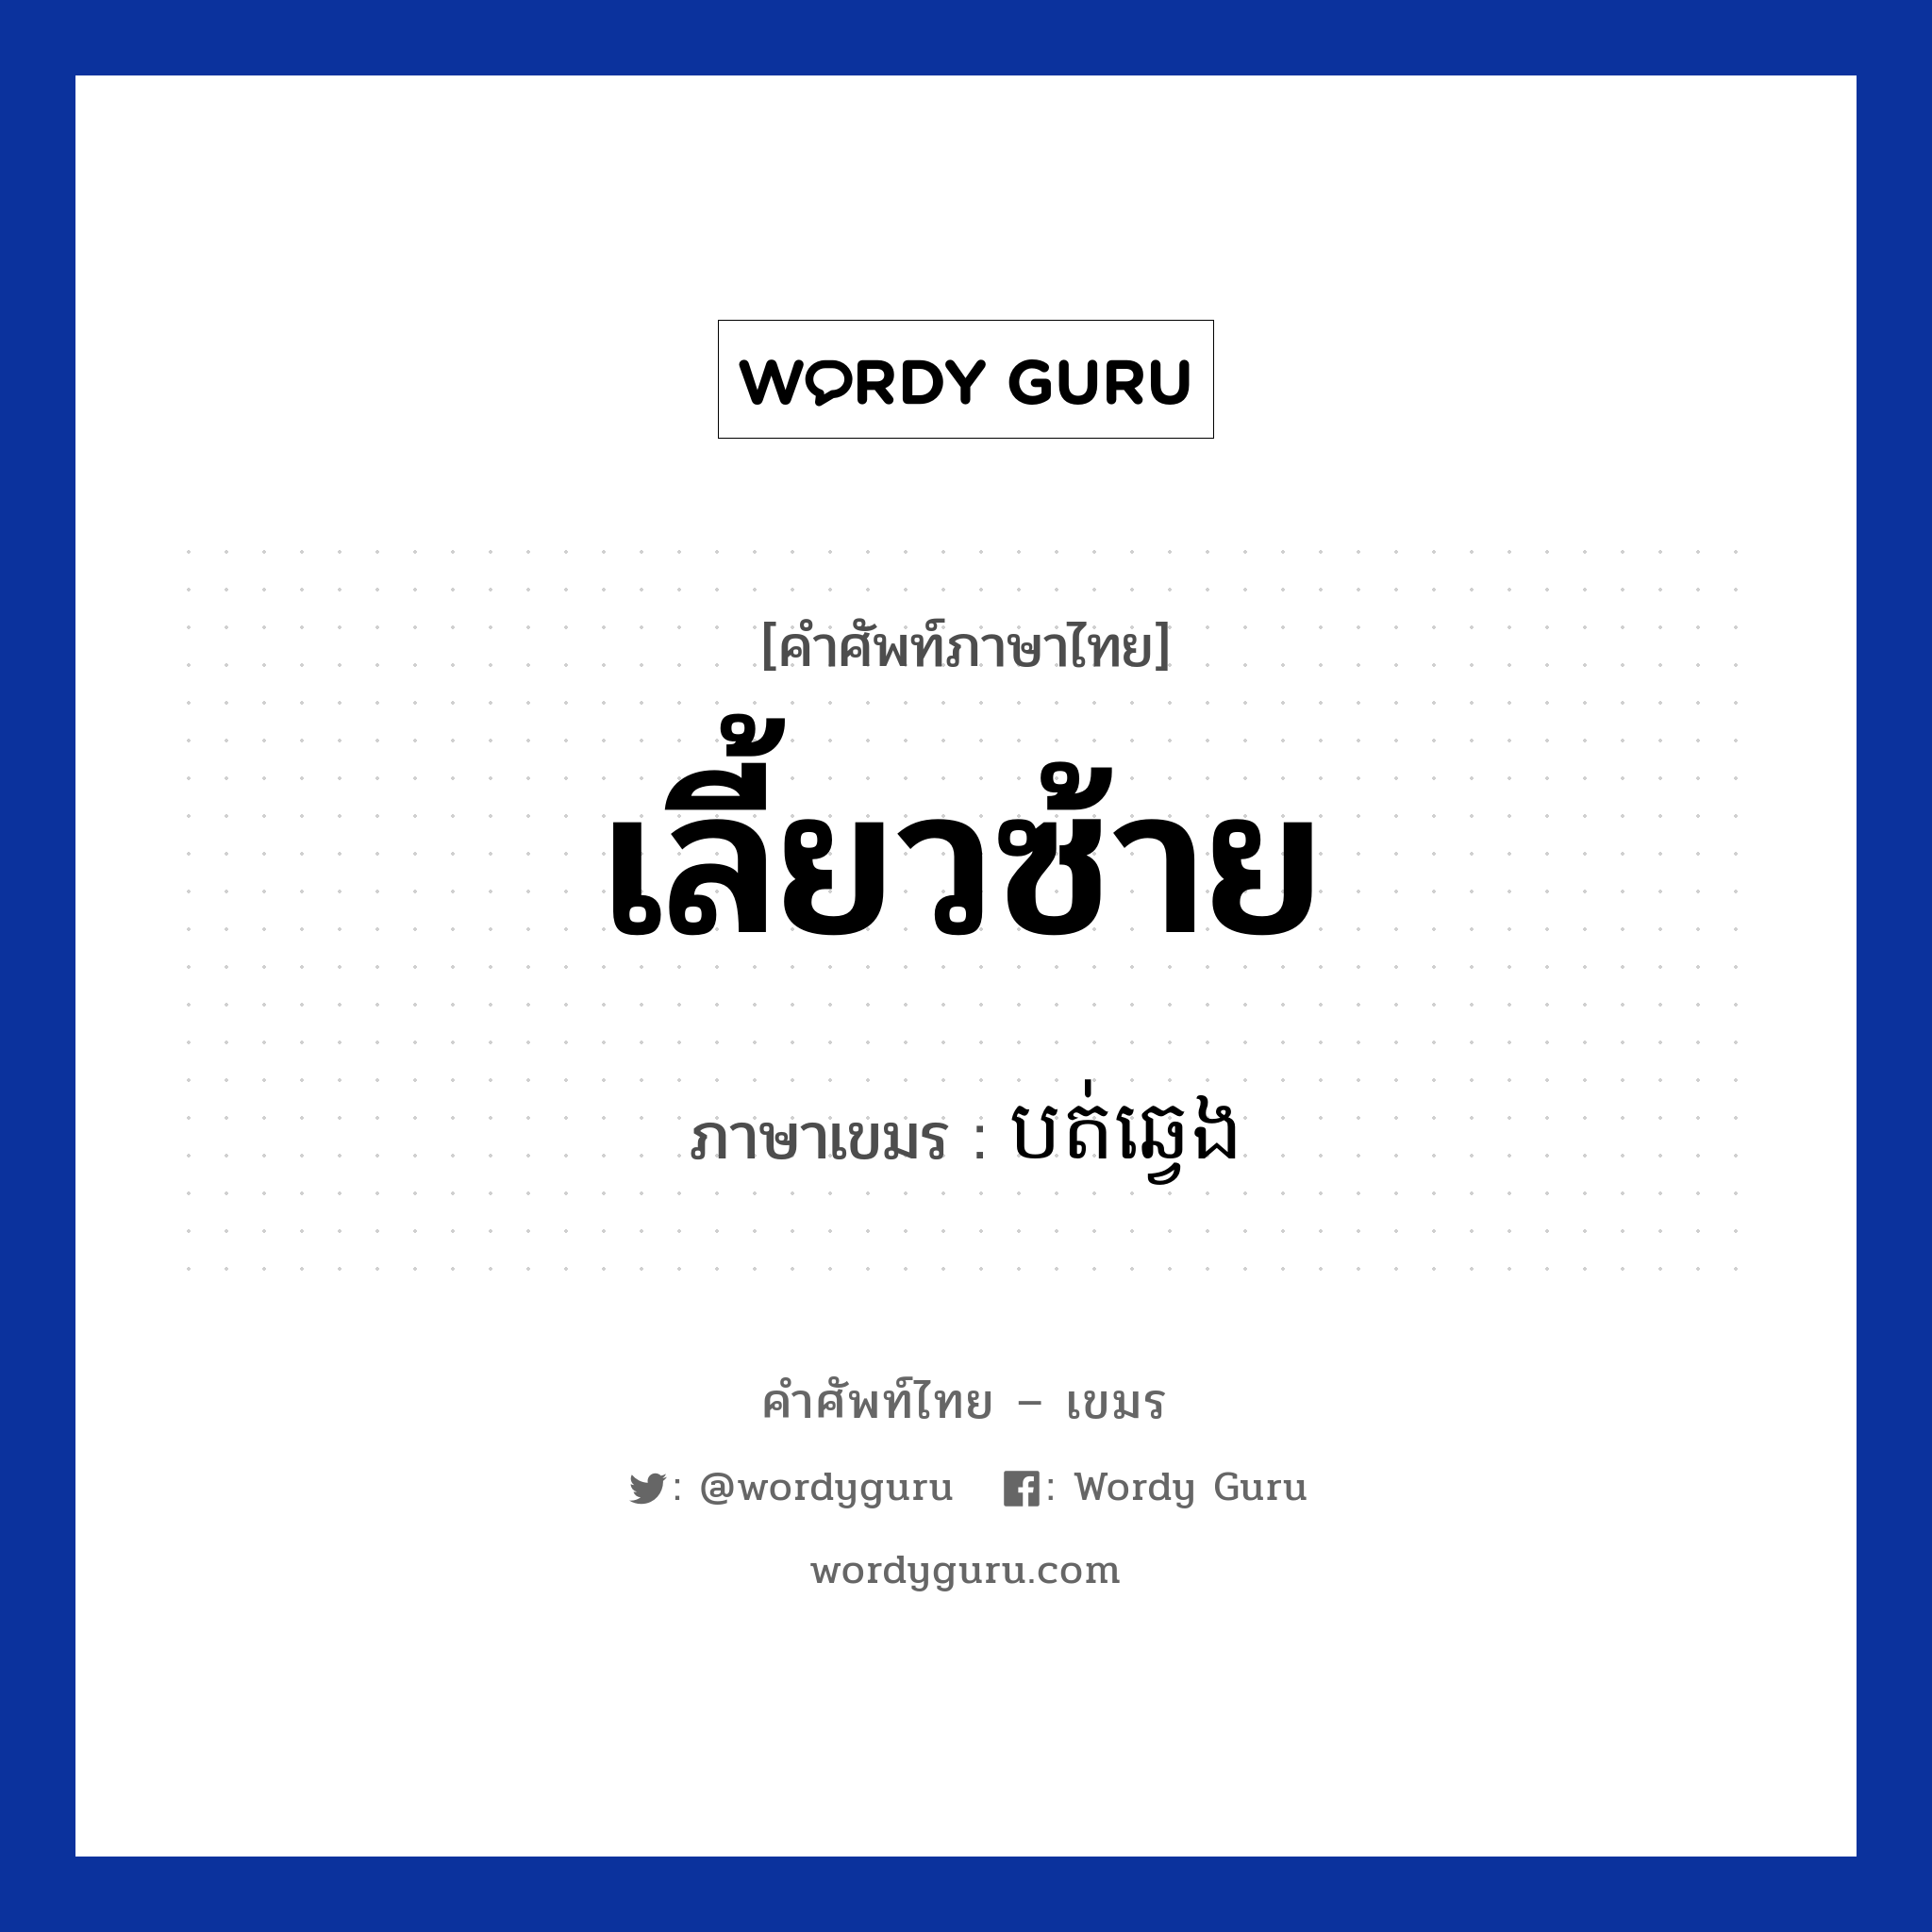 เลี้ยวซ้าย ภาษาเขมรคืออะไร, คำศัพท์ภาษาไทย - เขมร เลี้ยวซ้าย ภาษาเขมร បត់ឆ្វេង หมวด การเดินทาง Bot chveng หมวด การเดินทาง